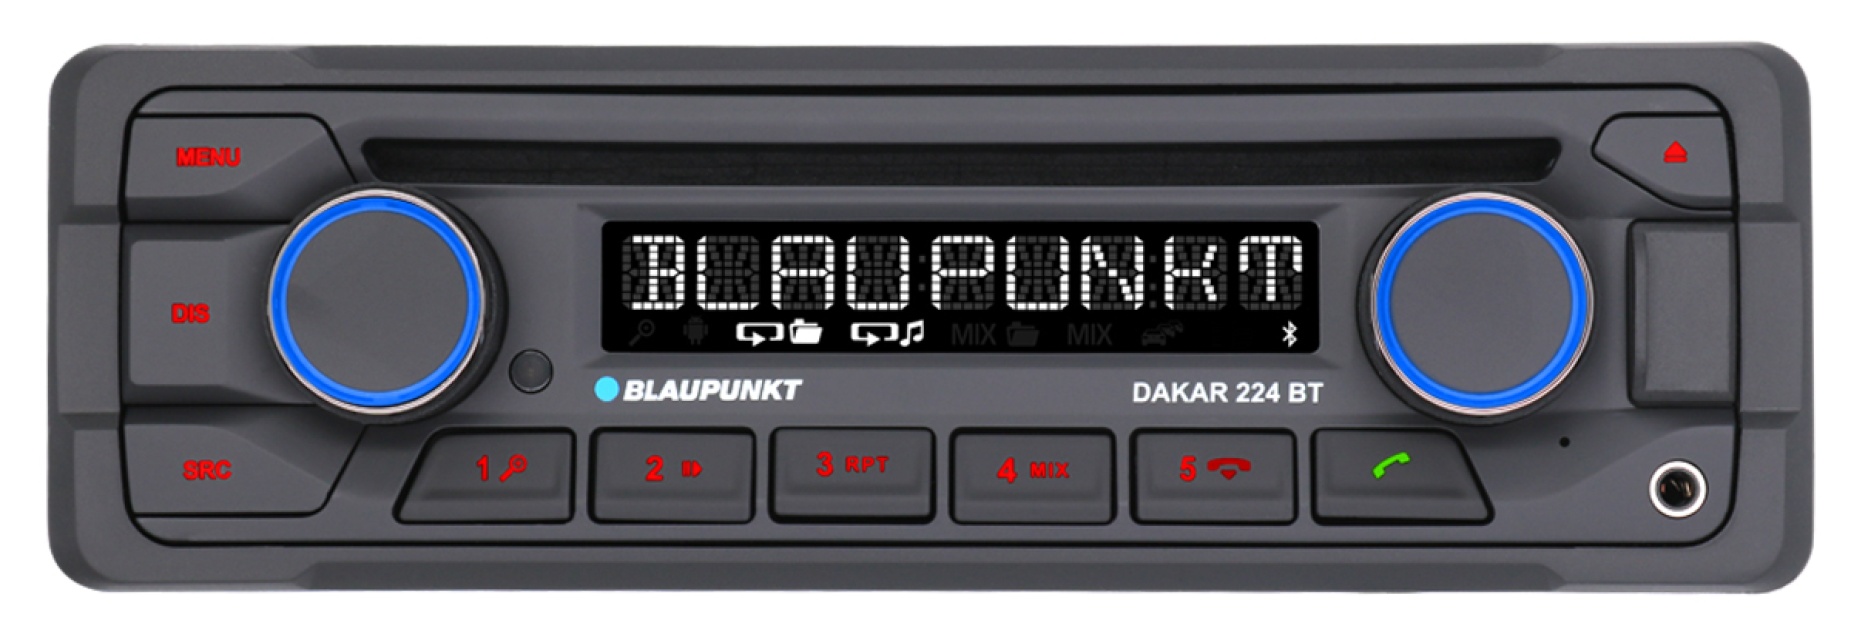 Blaupunkt Dakar 224, 24V stereo med Bluetooth och 2 par lågnivå med 4V